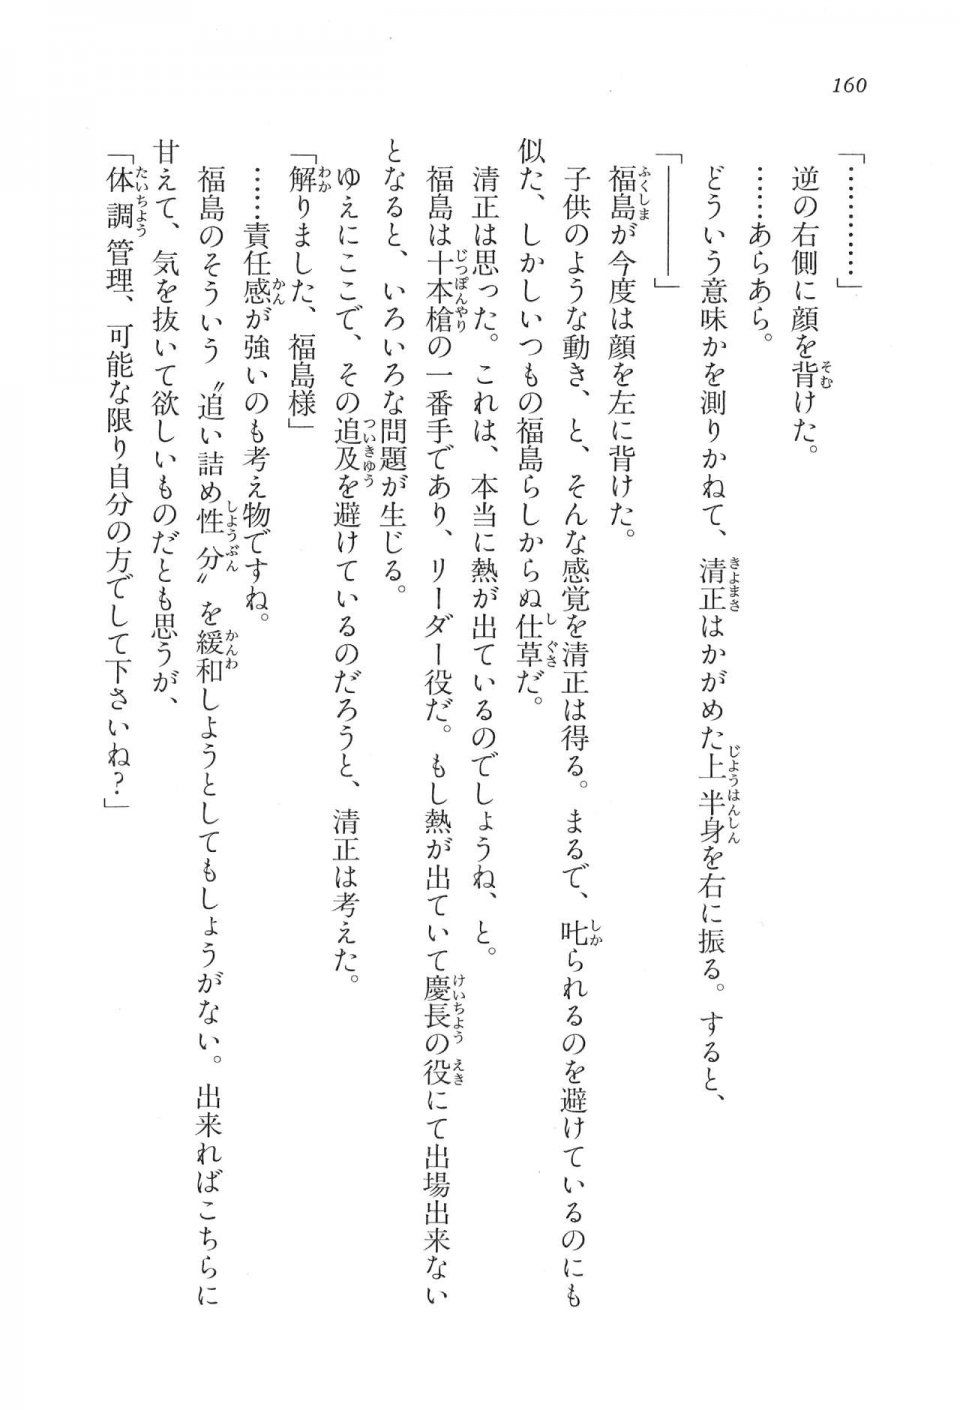 Kyoukai Senjou no Horizon LN Vol 16(7A) - Photo #160